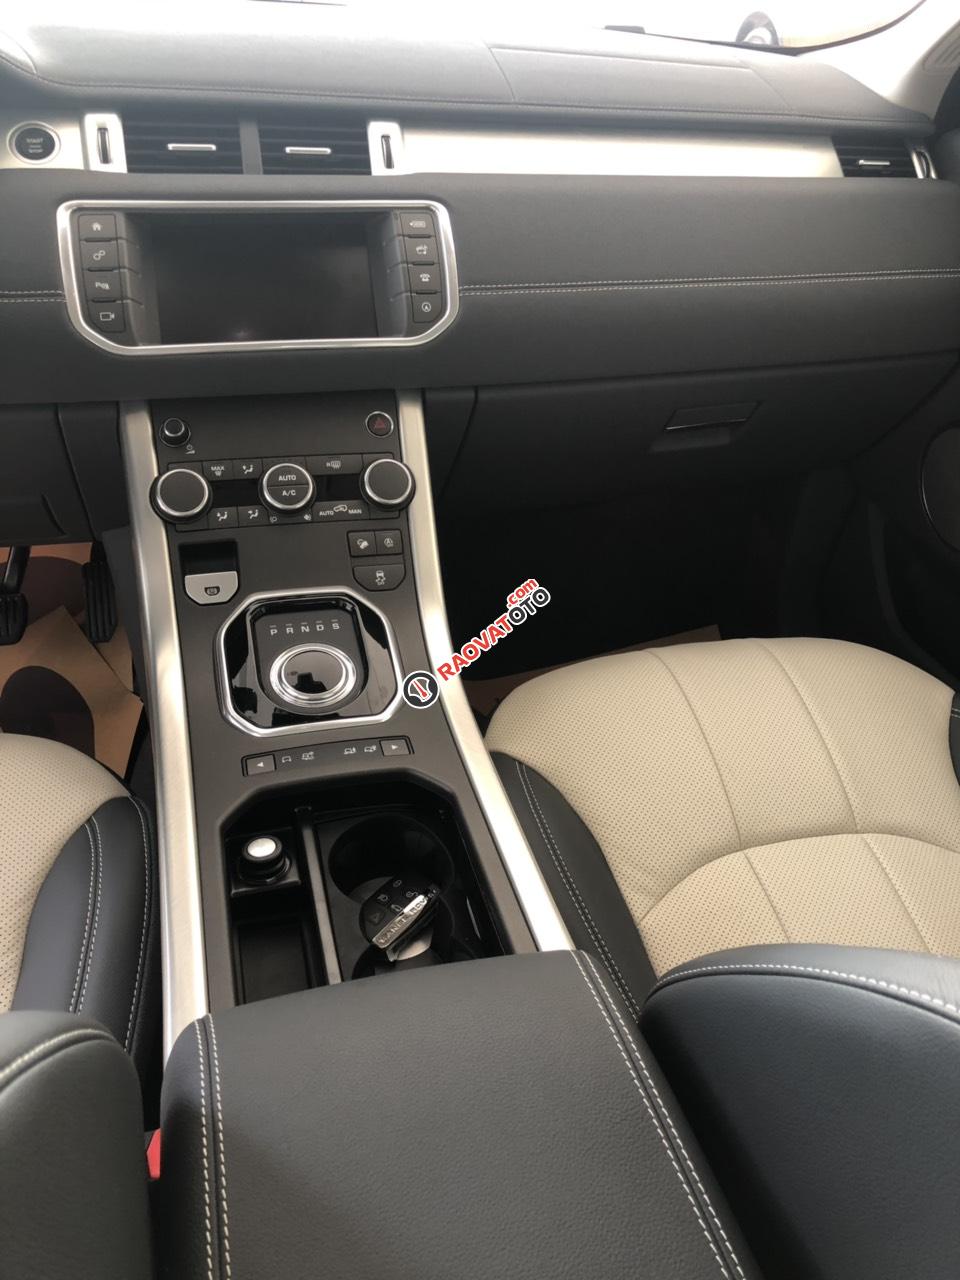 Bán LandRover Range Rover Evoque sản xuất 2019, giao ngay, màu trắng, đỏ, xám, đen, xanh, gọi 0932222253-0